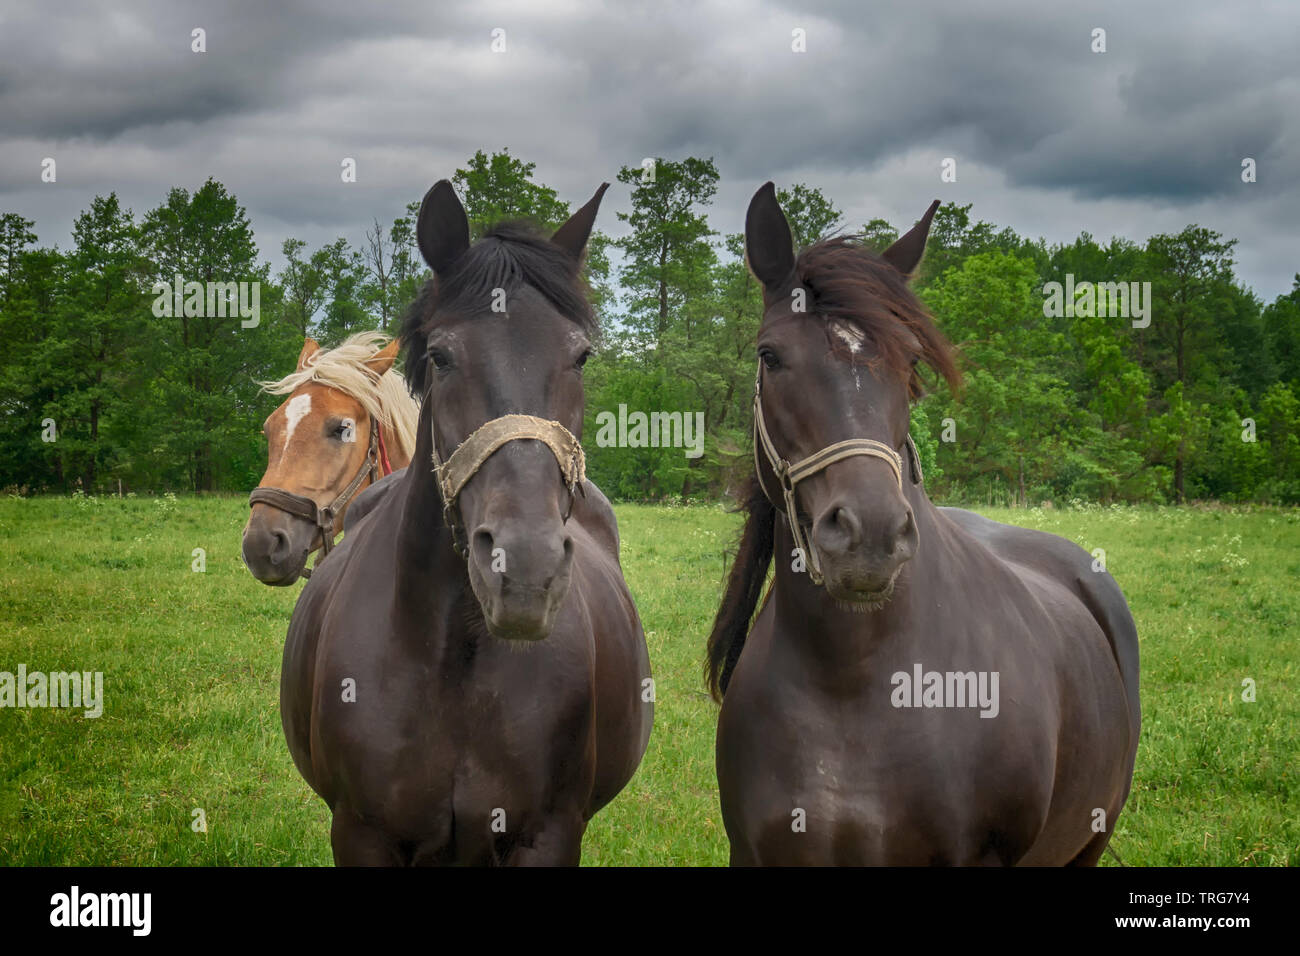 Deux chevaux marron avec dos-nu debout dans une prairie au printemps dans un close up head shot Banque D'Images